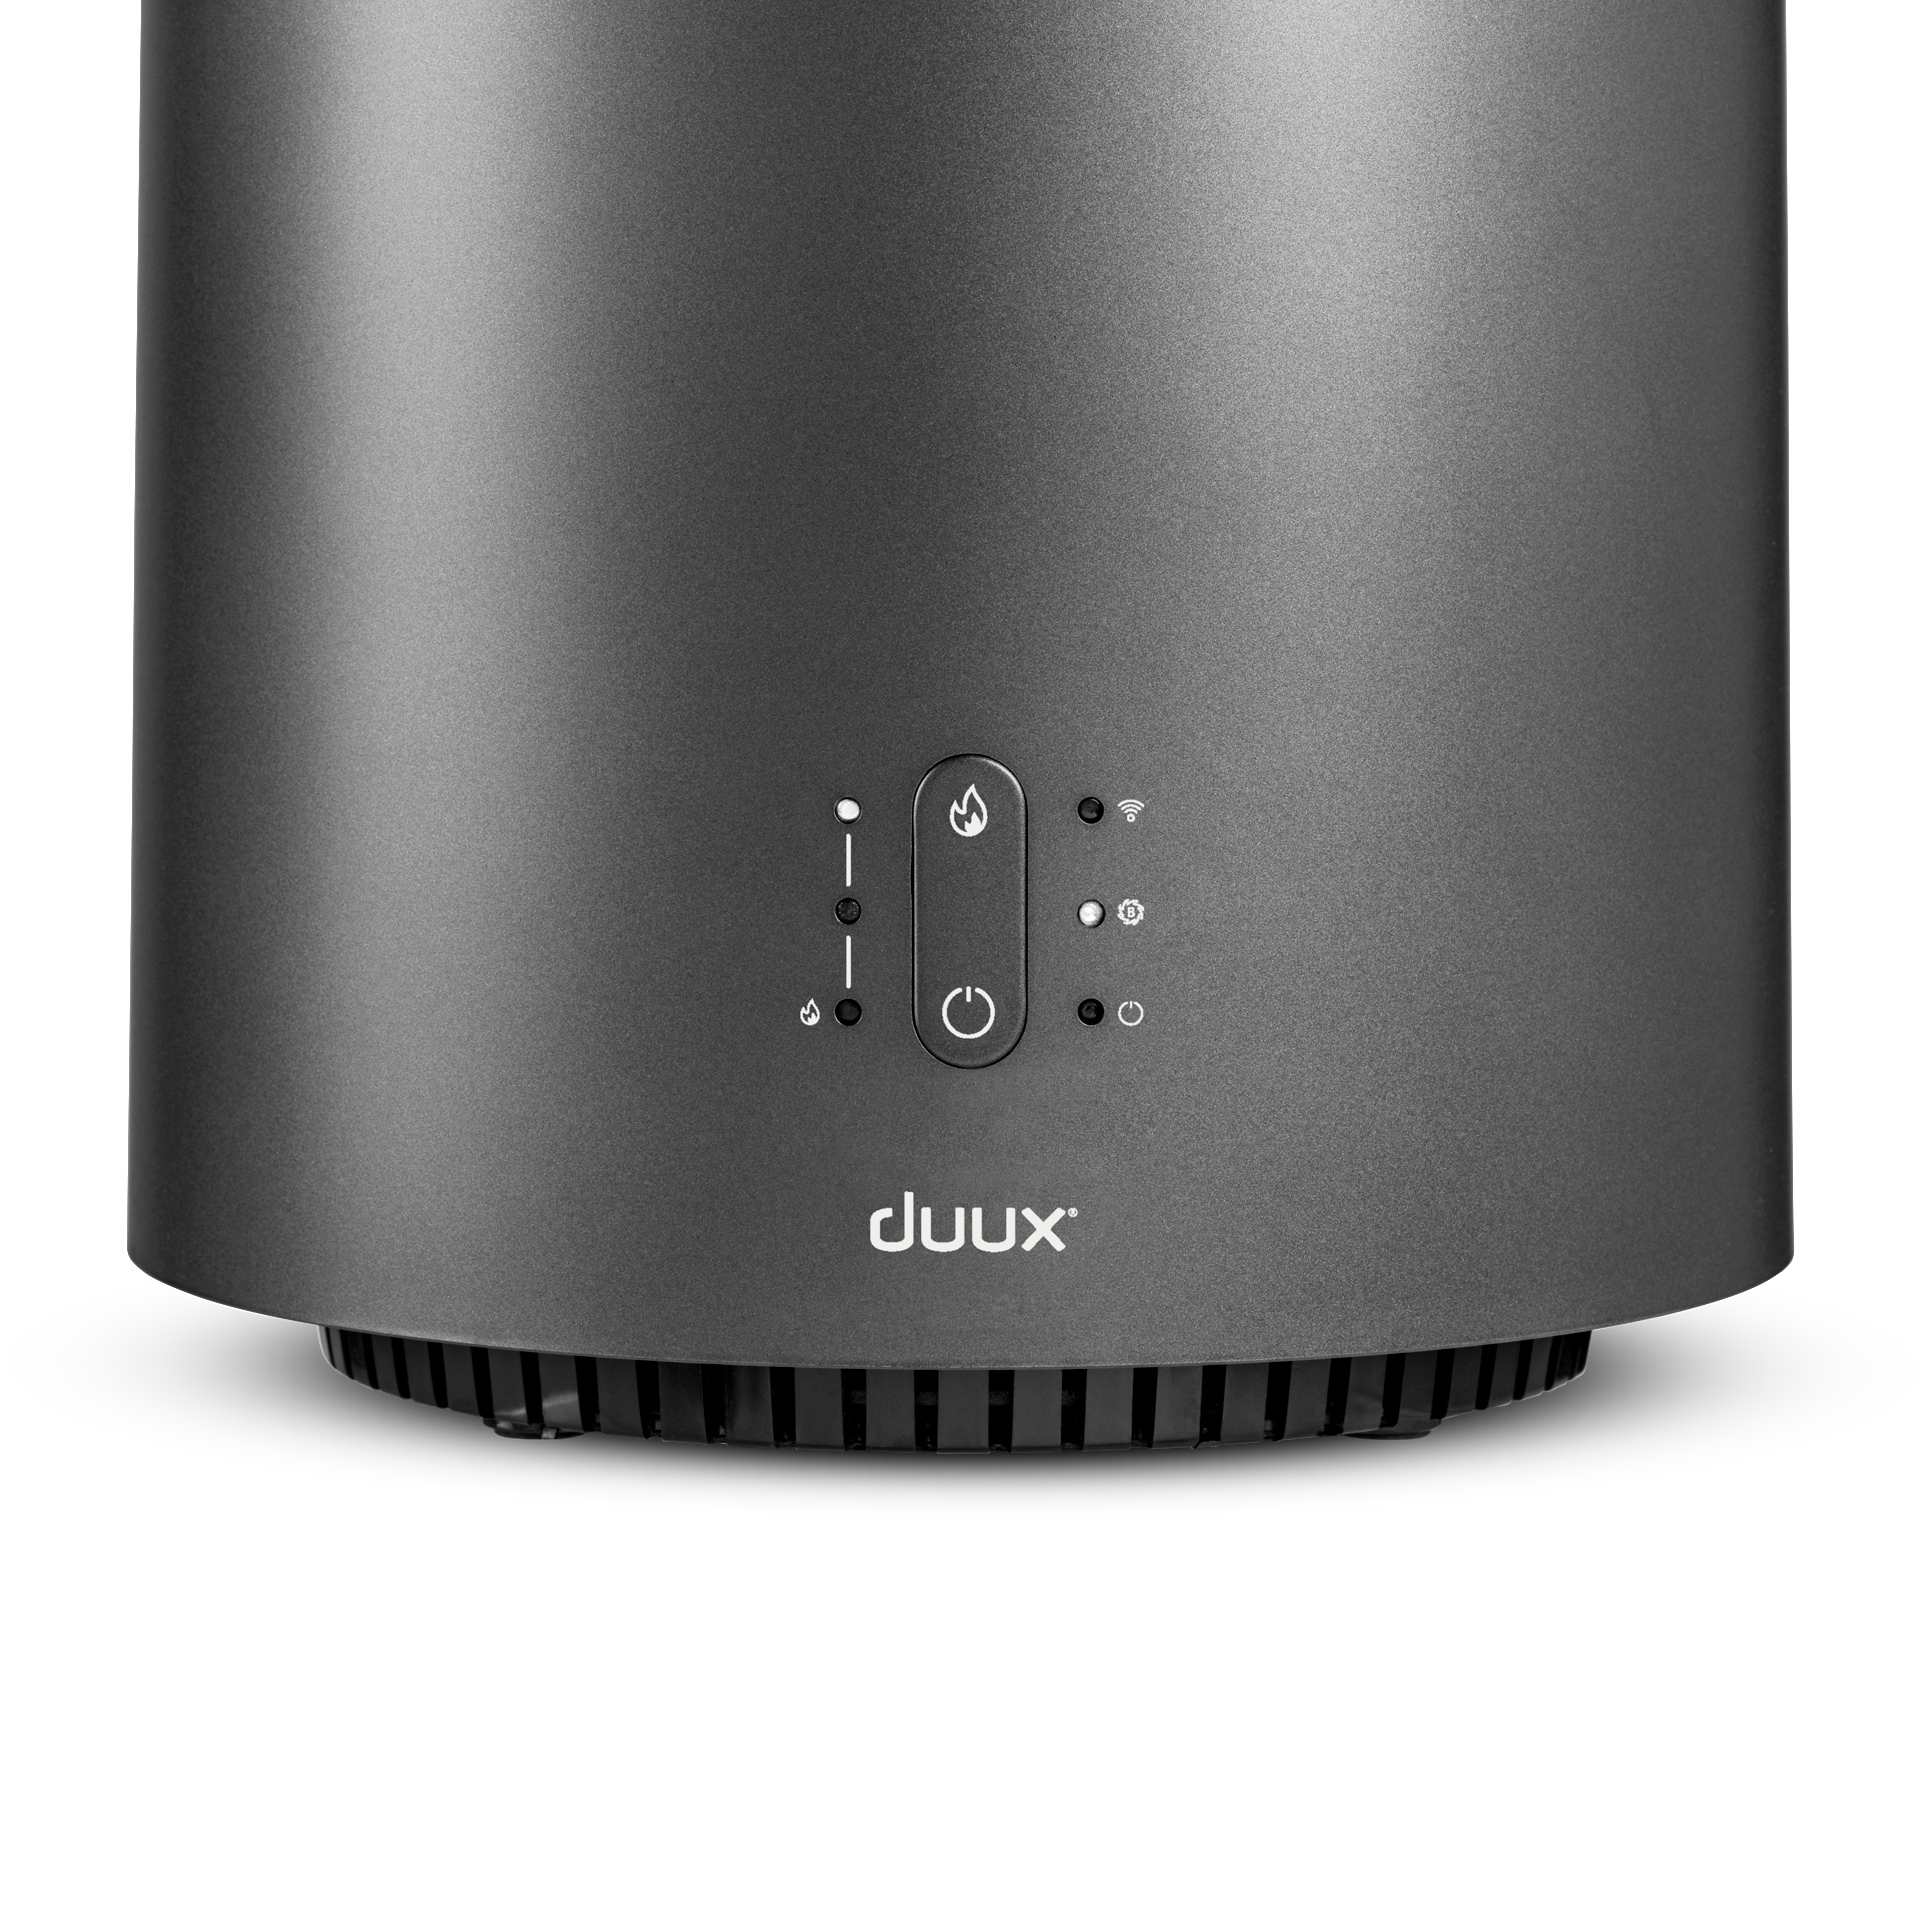 DUUX Threesixty 2 75 Smart (1800 m³) Raumgröße: Heizlüfter Watt